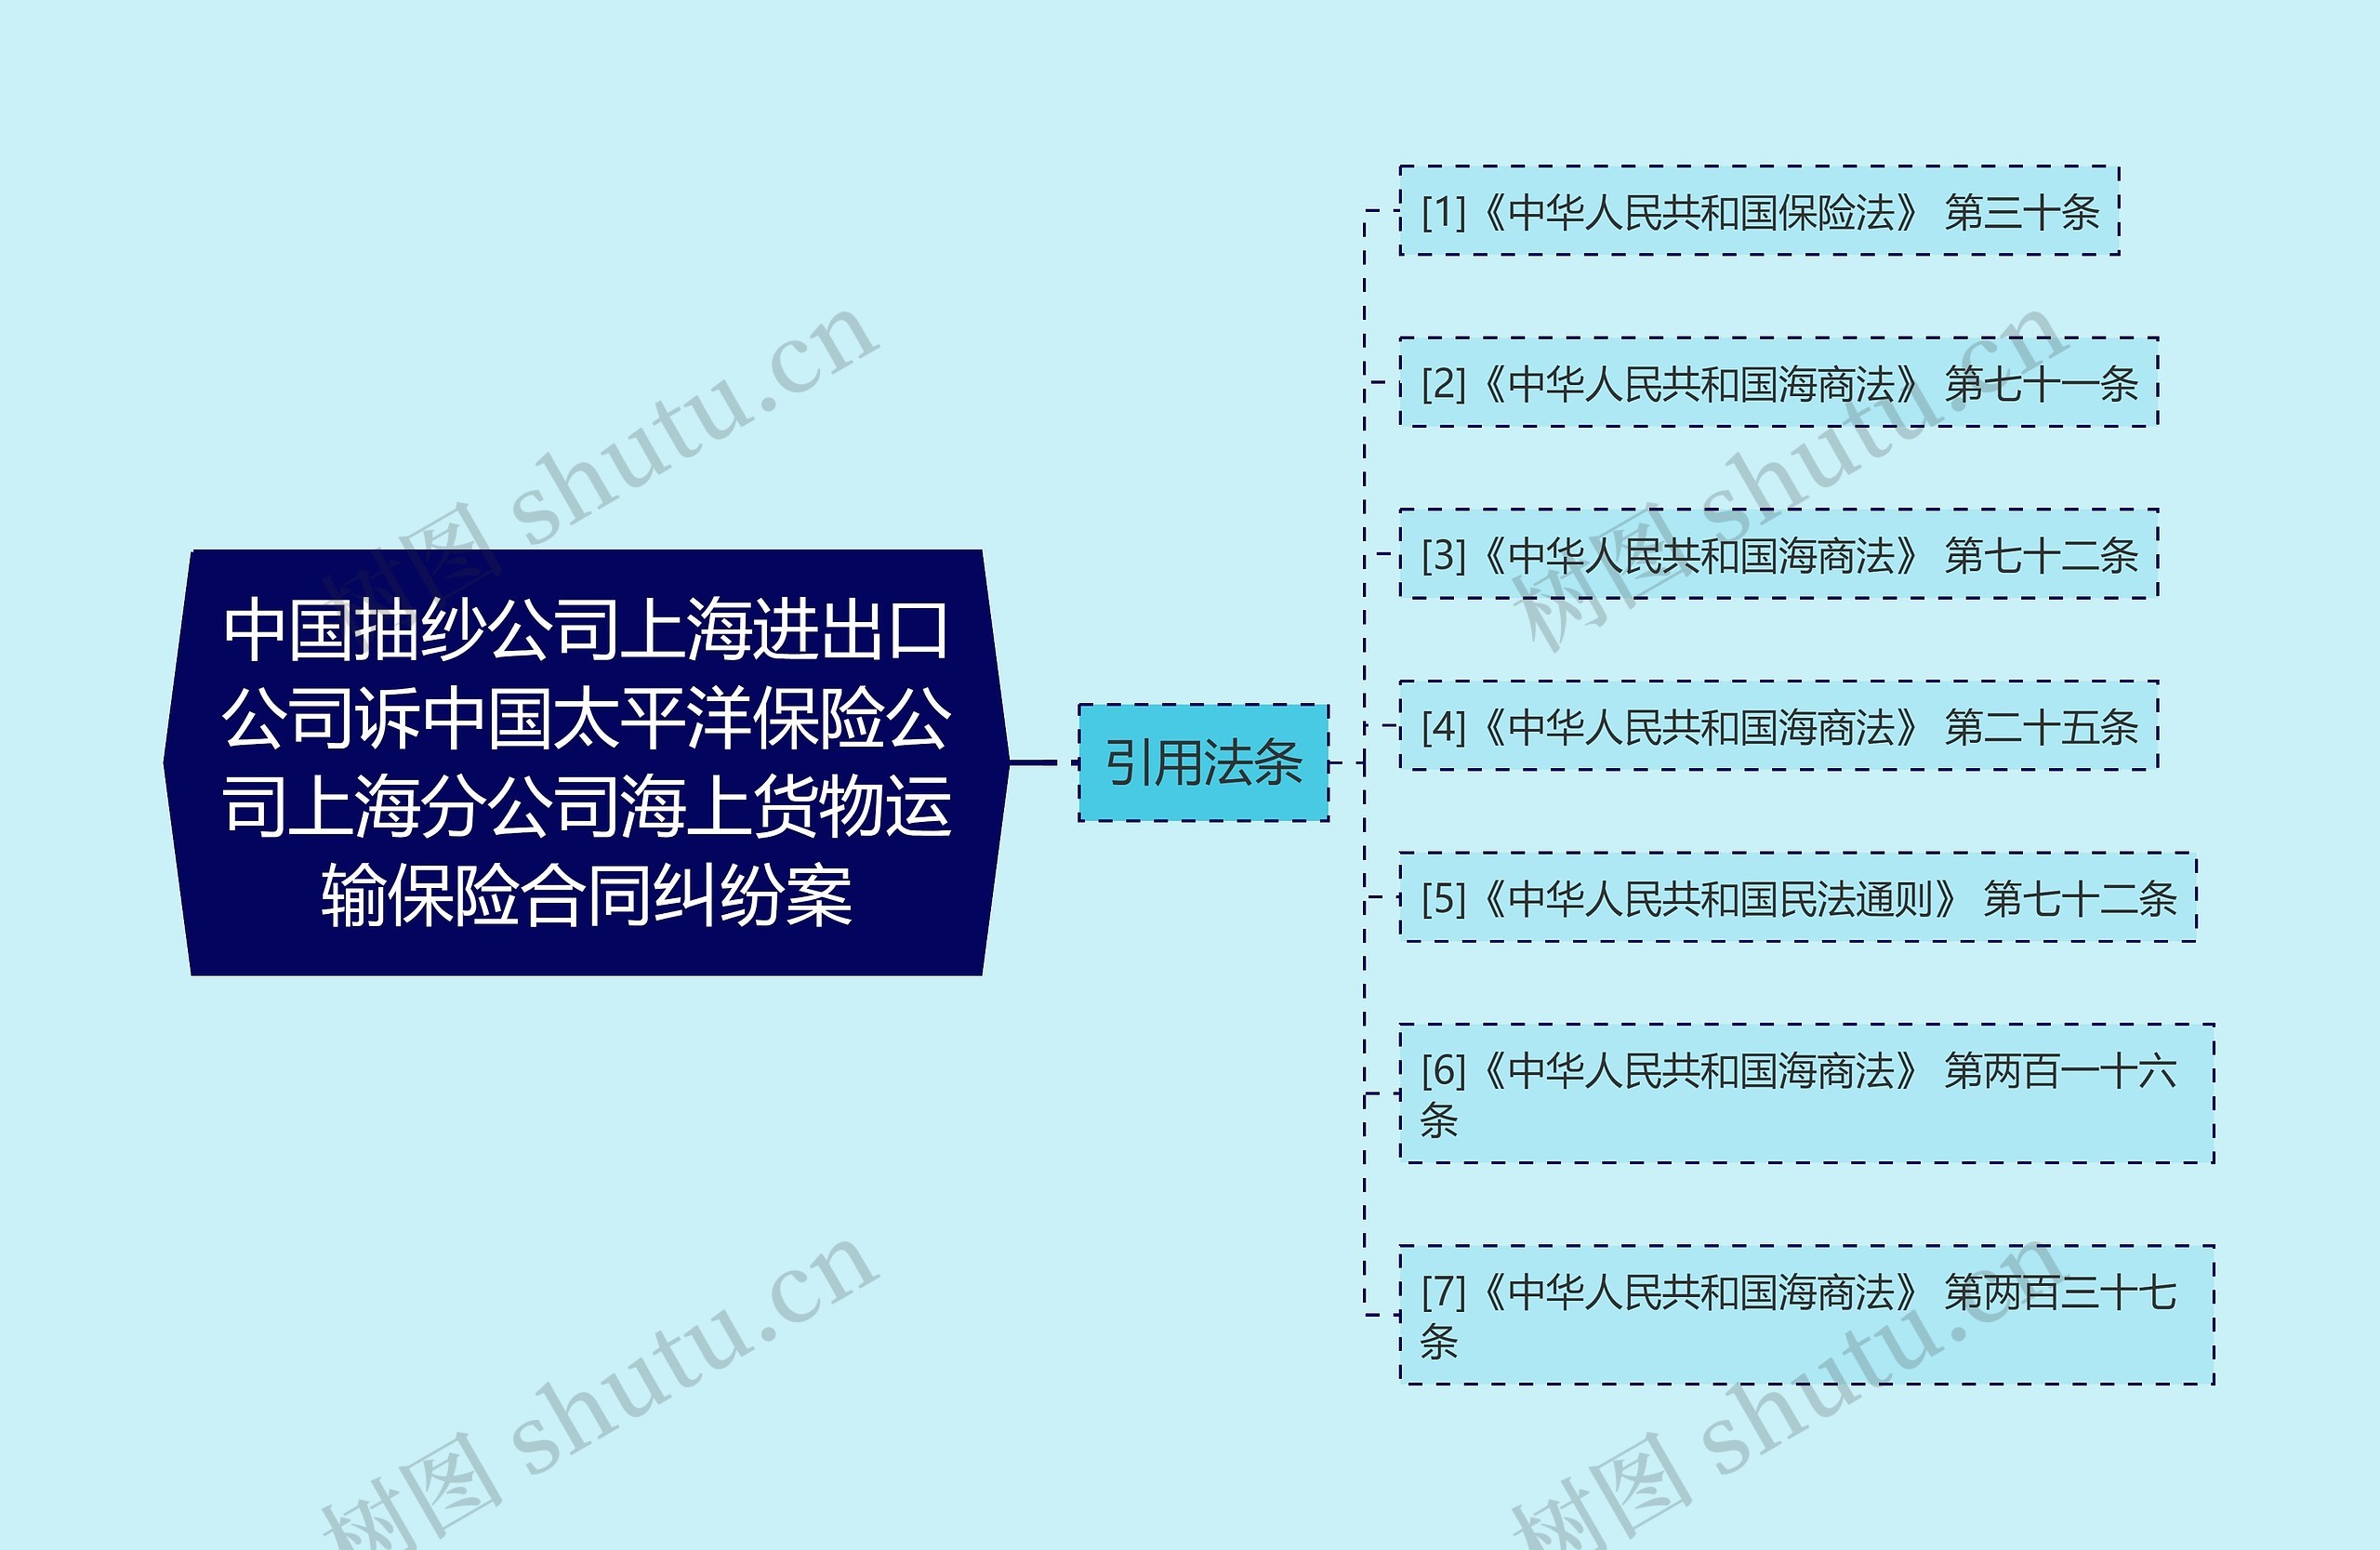 中国抽纱公司上海进出口公司诉中国太平洋保险公司上海分公司海上货物运输保险合同纠纷案